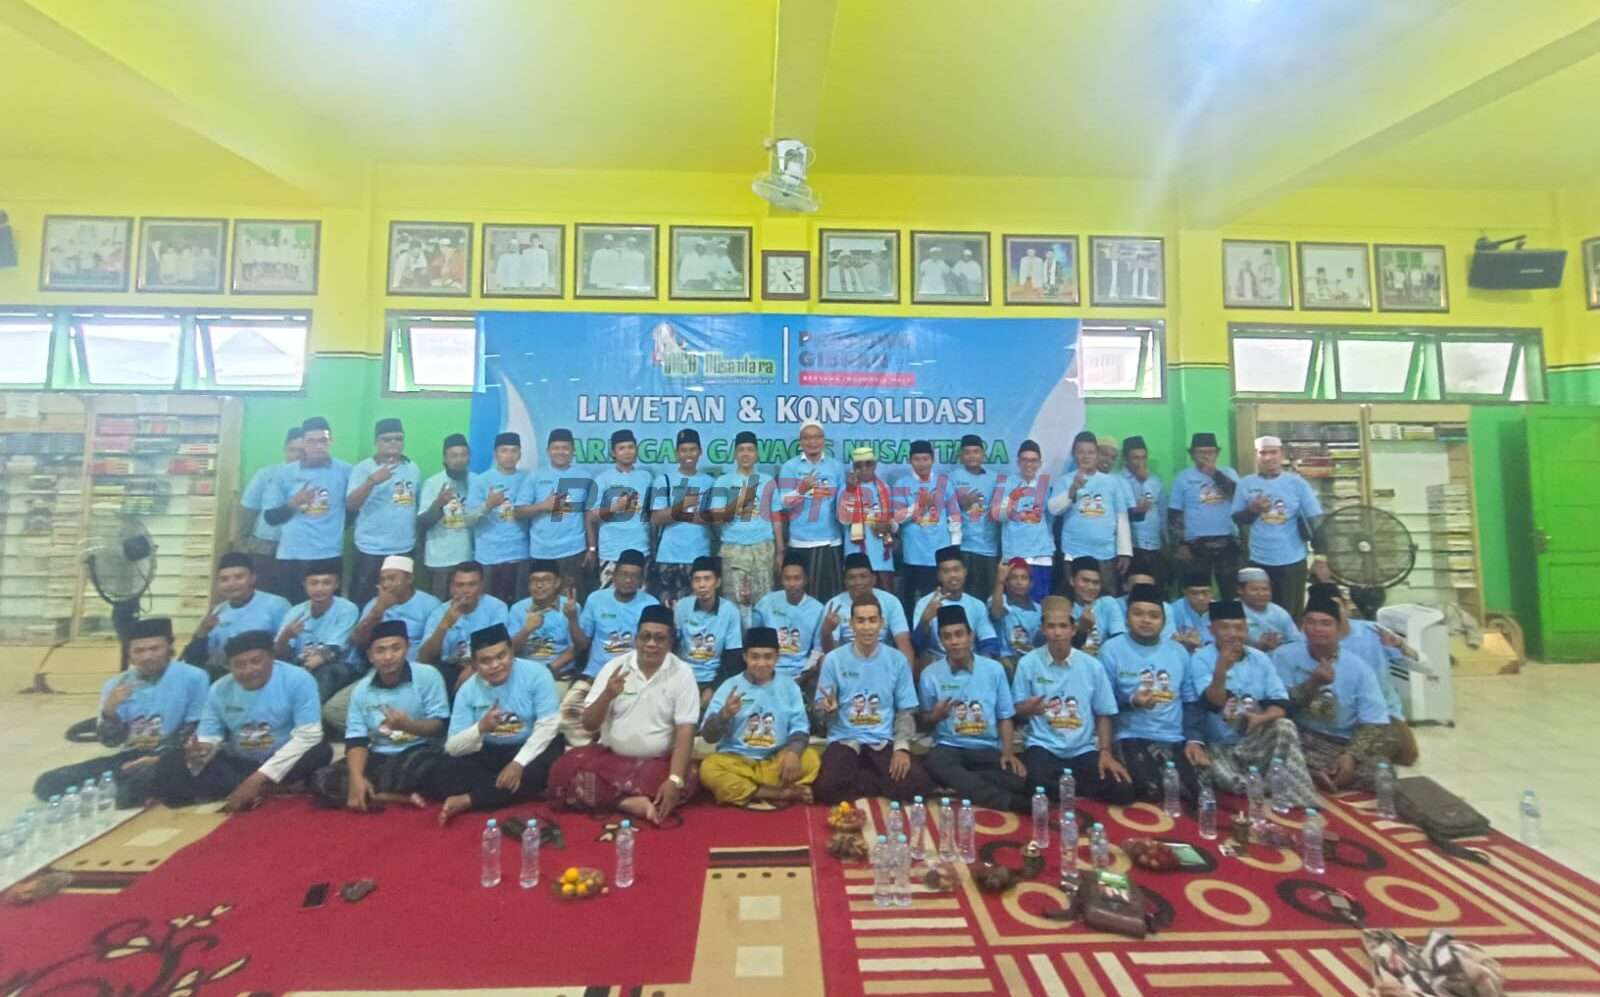 Konsolidasi Jaringan Gawagis Nusantara di Ponpes Al Furqon Driyorejo Gresik